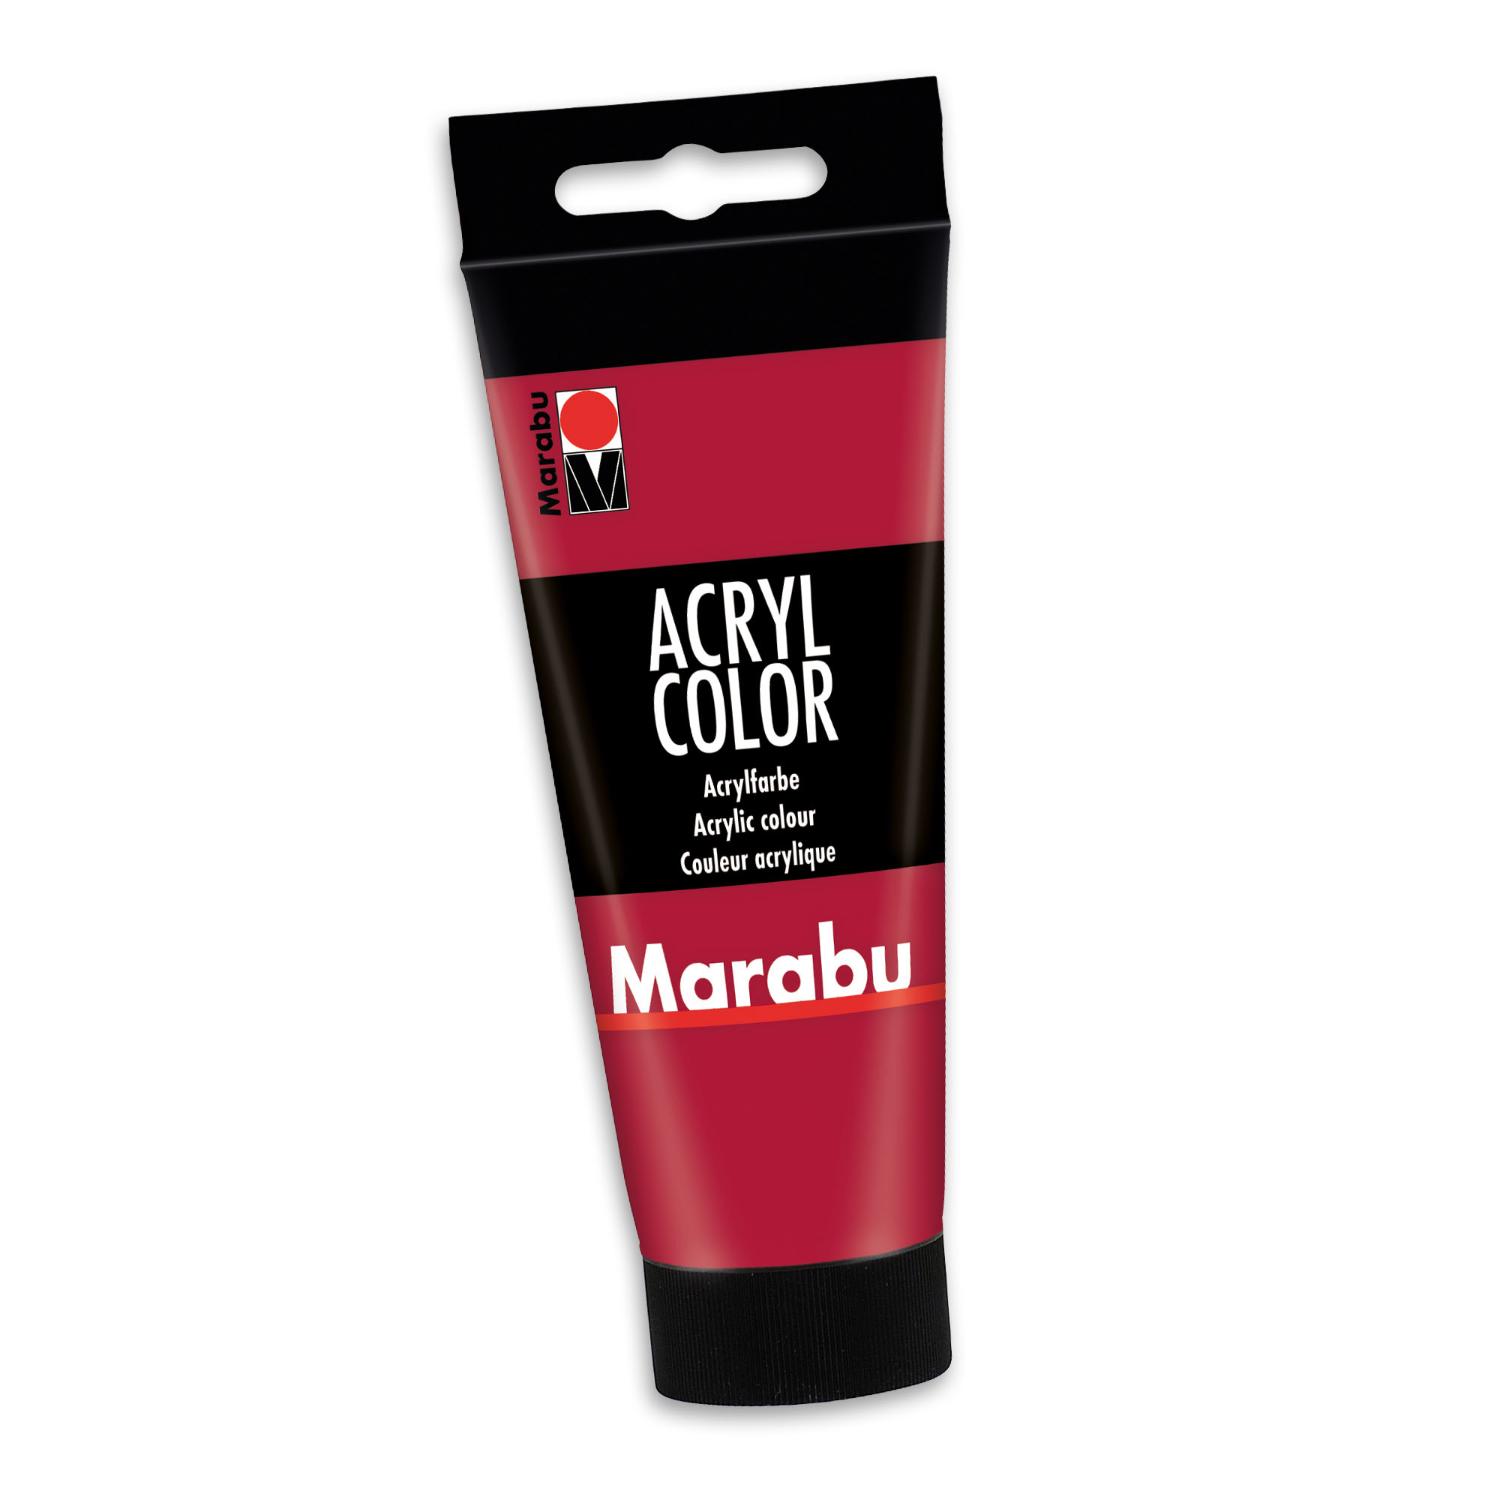 Marabu Acrylfarbe Acryl Color, 100 ml, karminrot 032